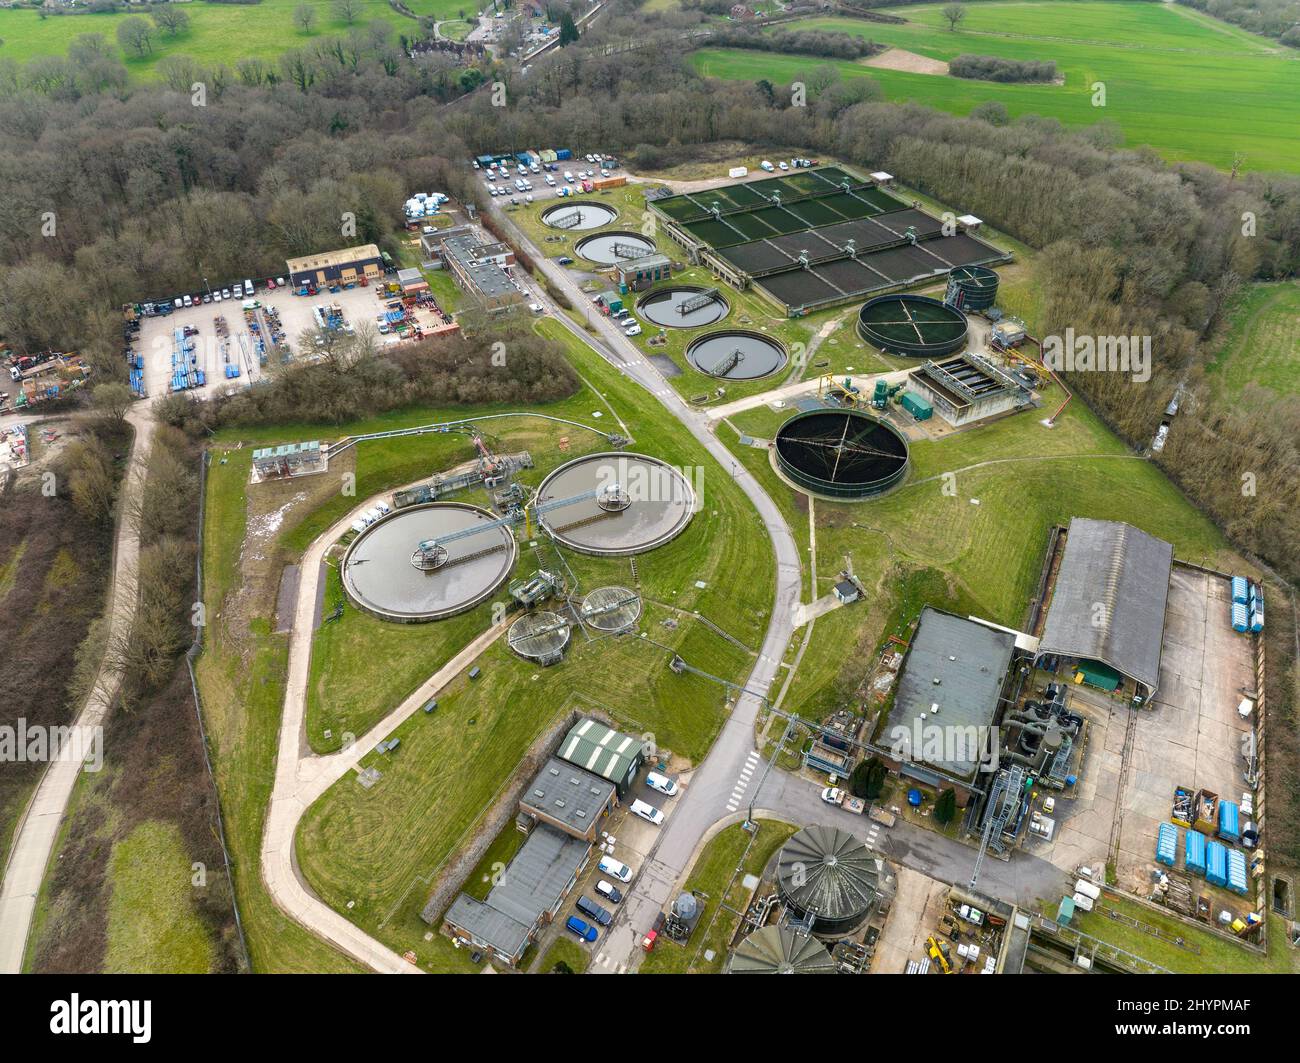 Klär- und Kläranlage (Btu Horsham Water Treatment Works) in Horsham West Sussex, Großbritannien, mit Siedlungstanks und Belüftungswegen. Stockfoto